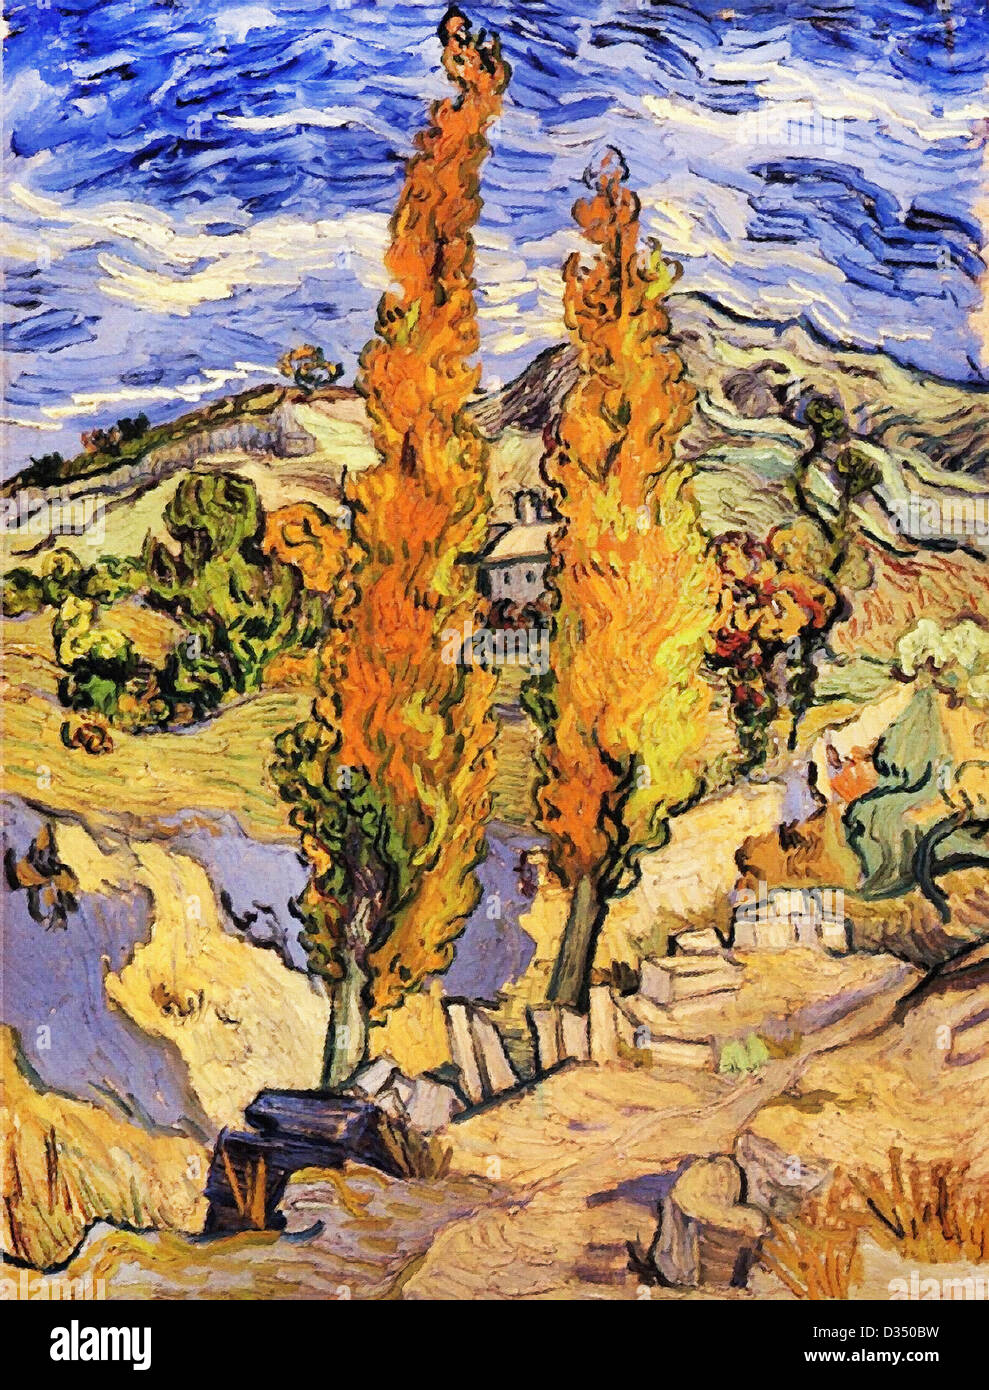 Vincent Van Gogh, zwei Pappeln auf einem Hügel. 1889. Post-Impressionismus. Öl auf Leinwand. Cleveland Museum of Art, Cleveland, Ohio, USA. Stockfoto